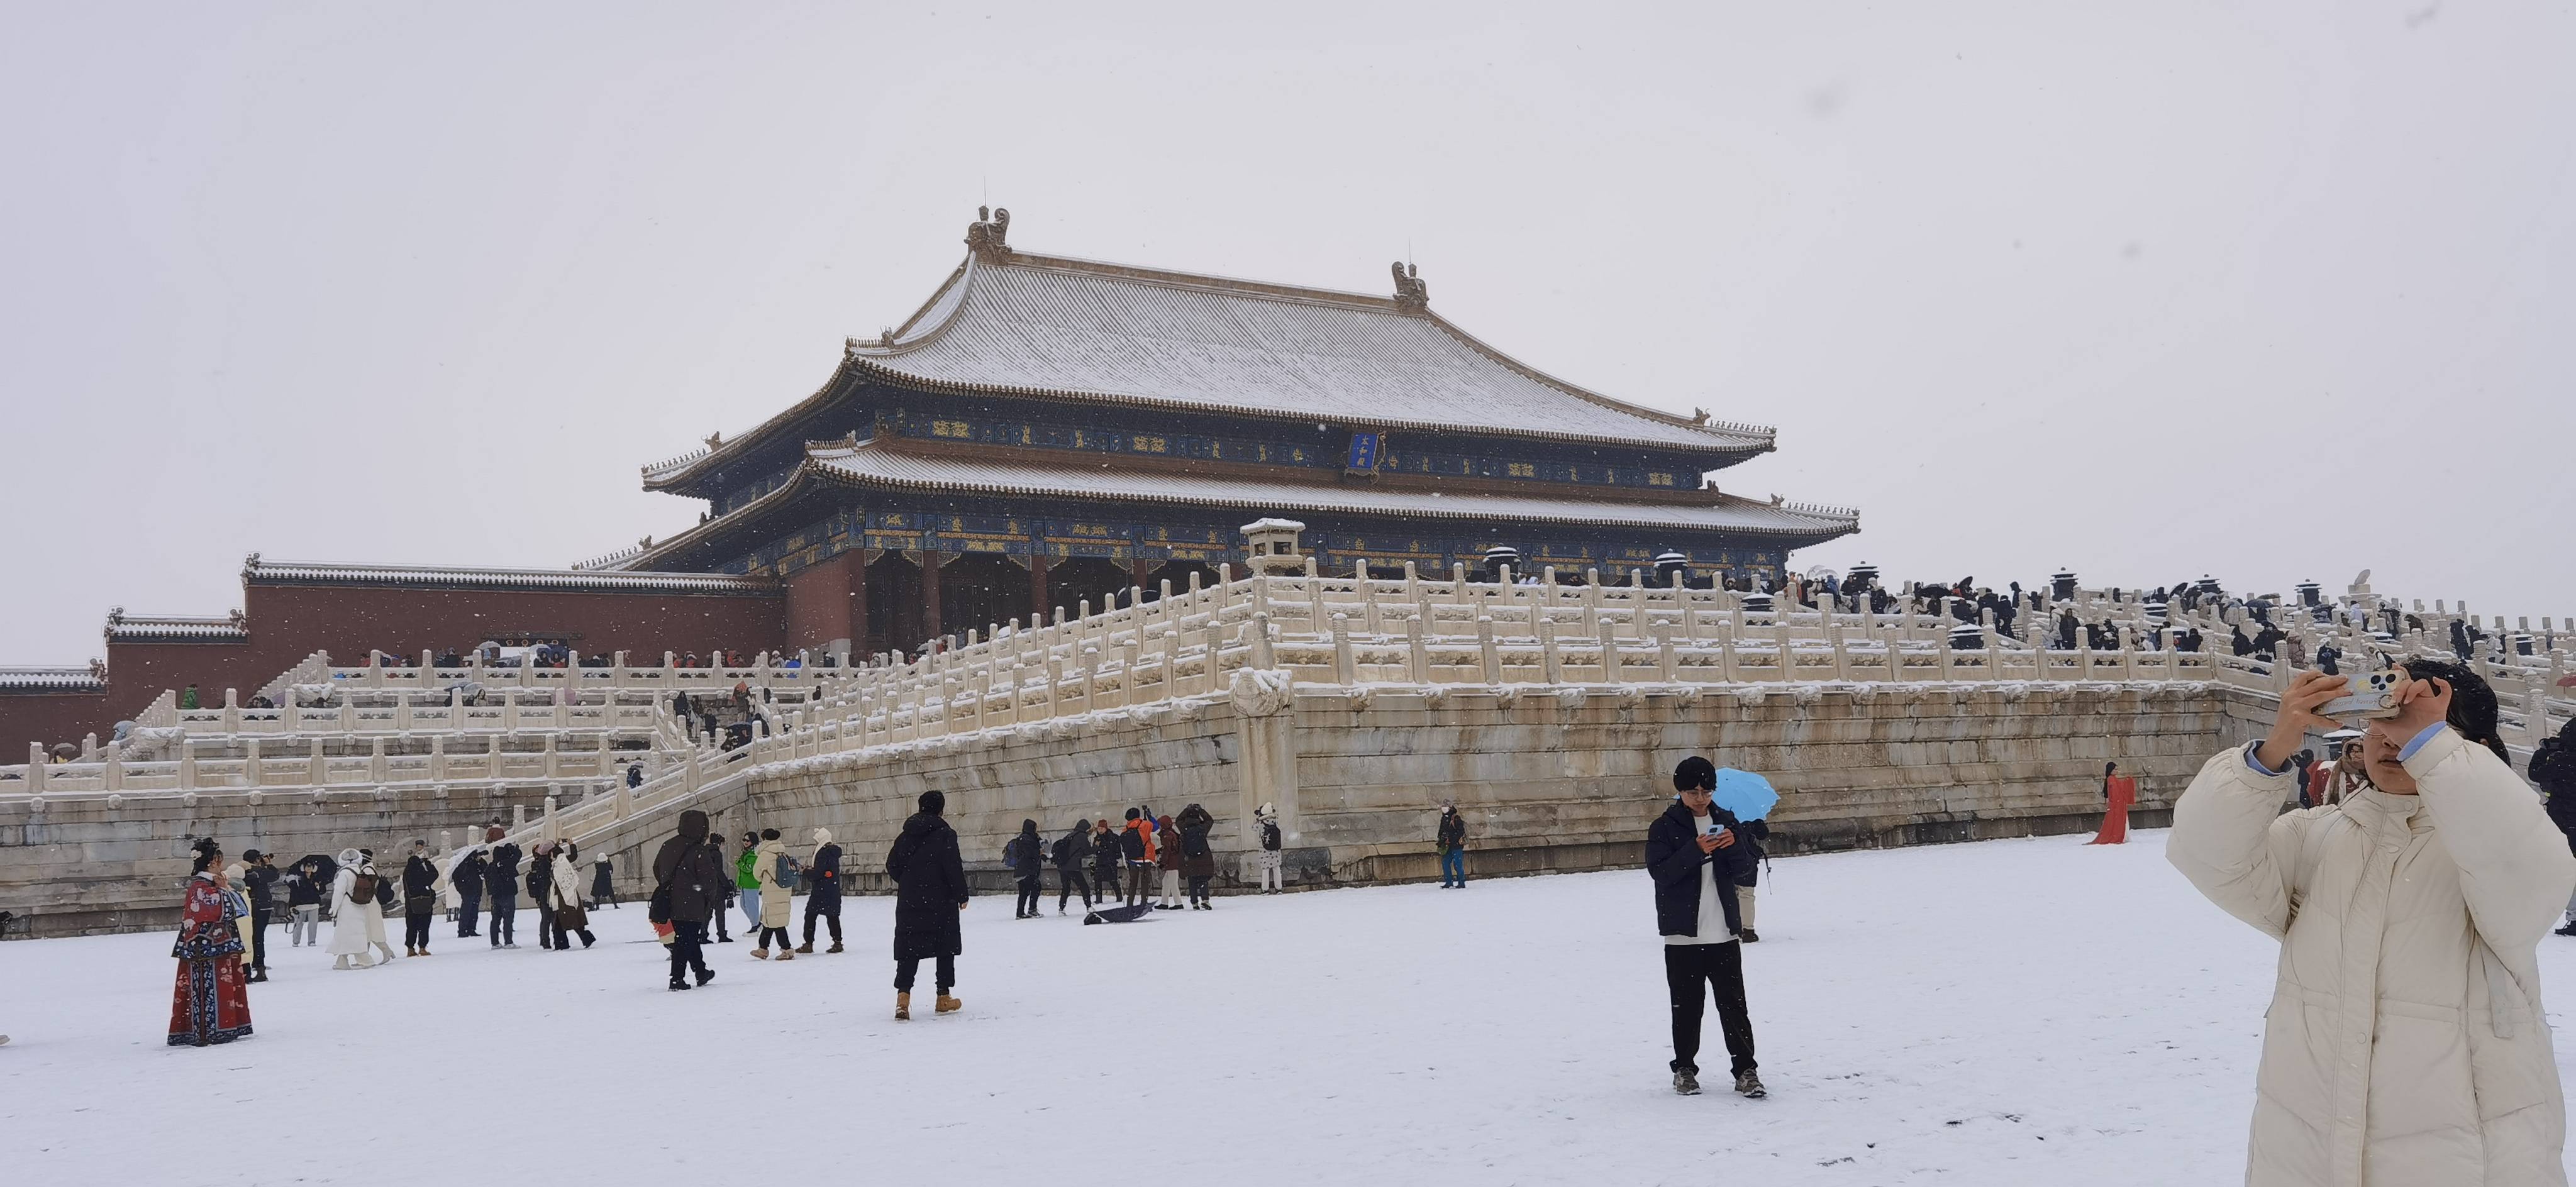 让故宫换上了紫禁城·雪景限定装北京纷纷扬扬的一场大雪